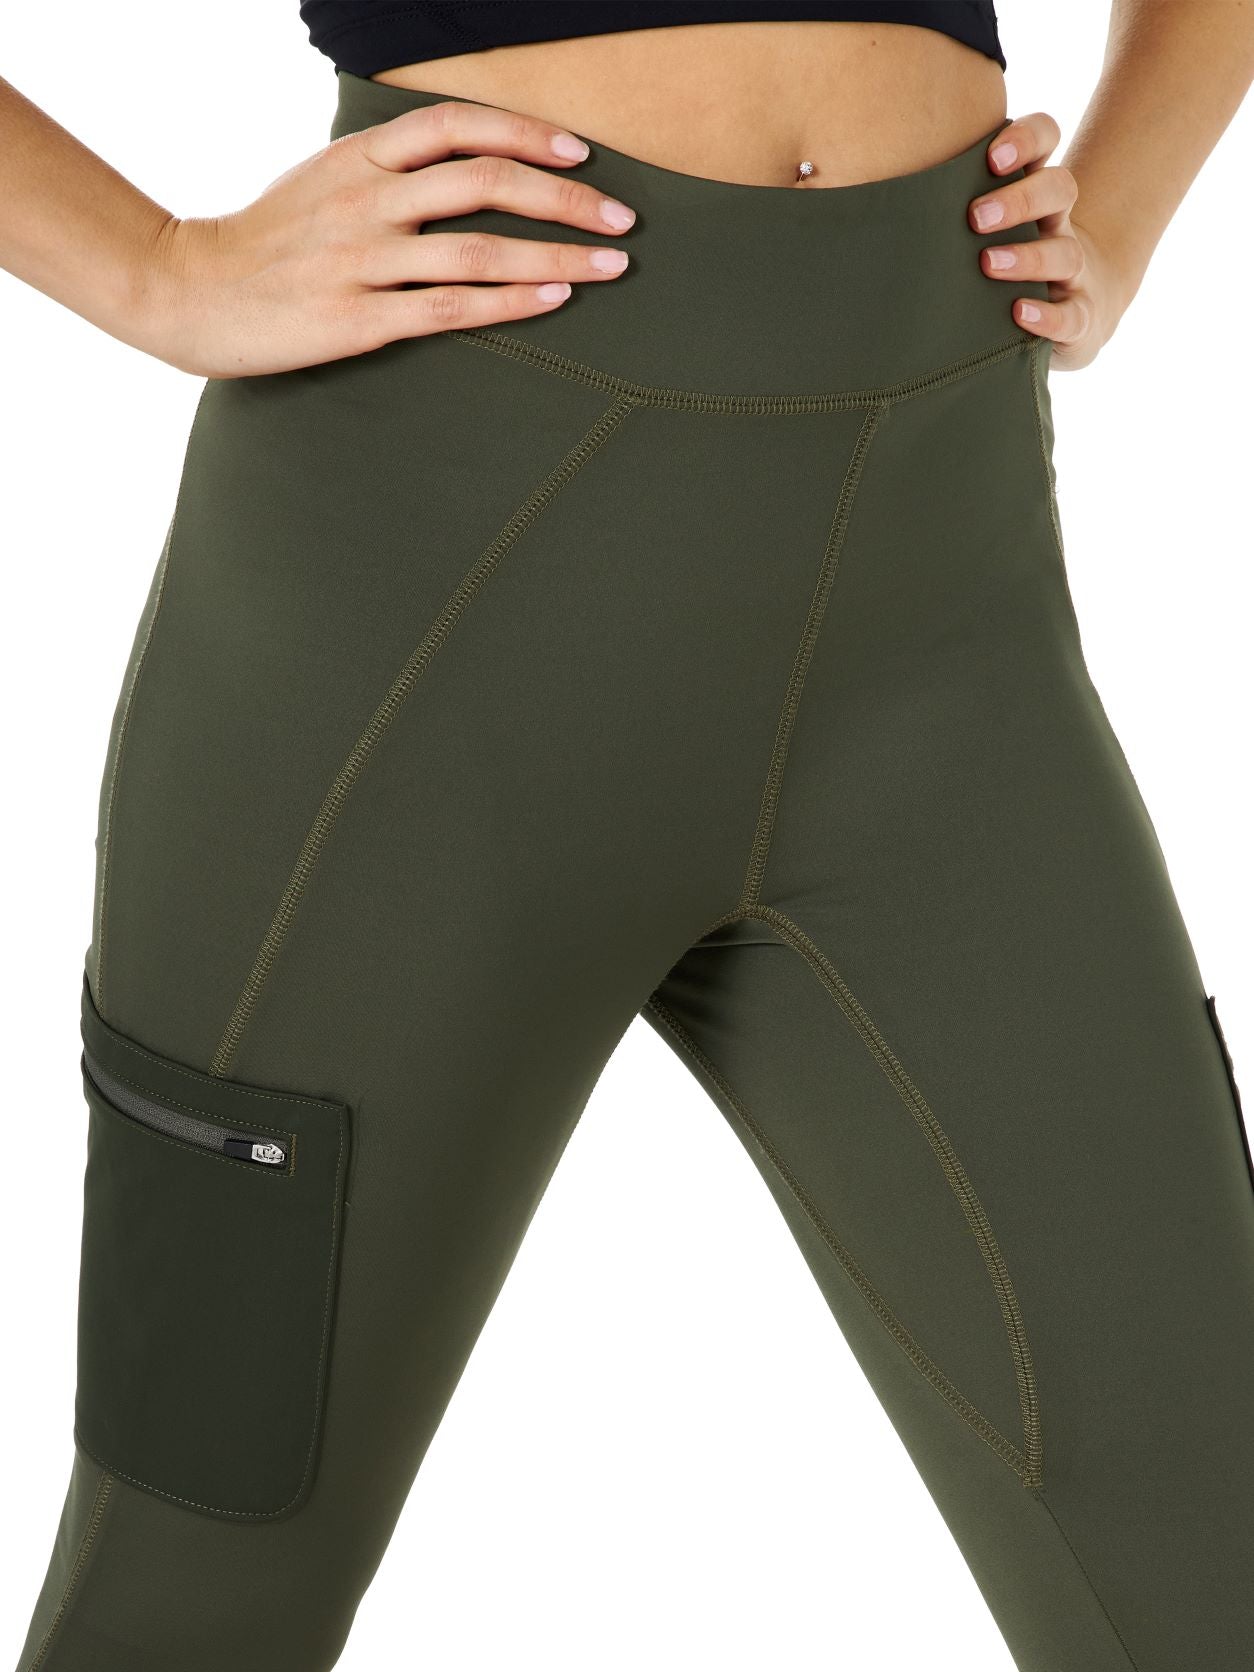 ATG™ Olive Hybrid Cargo Women's Legging by Wrangler® – Stone Creek